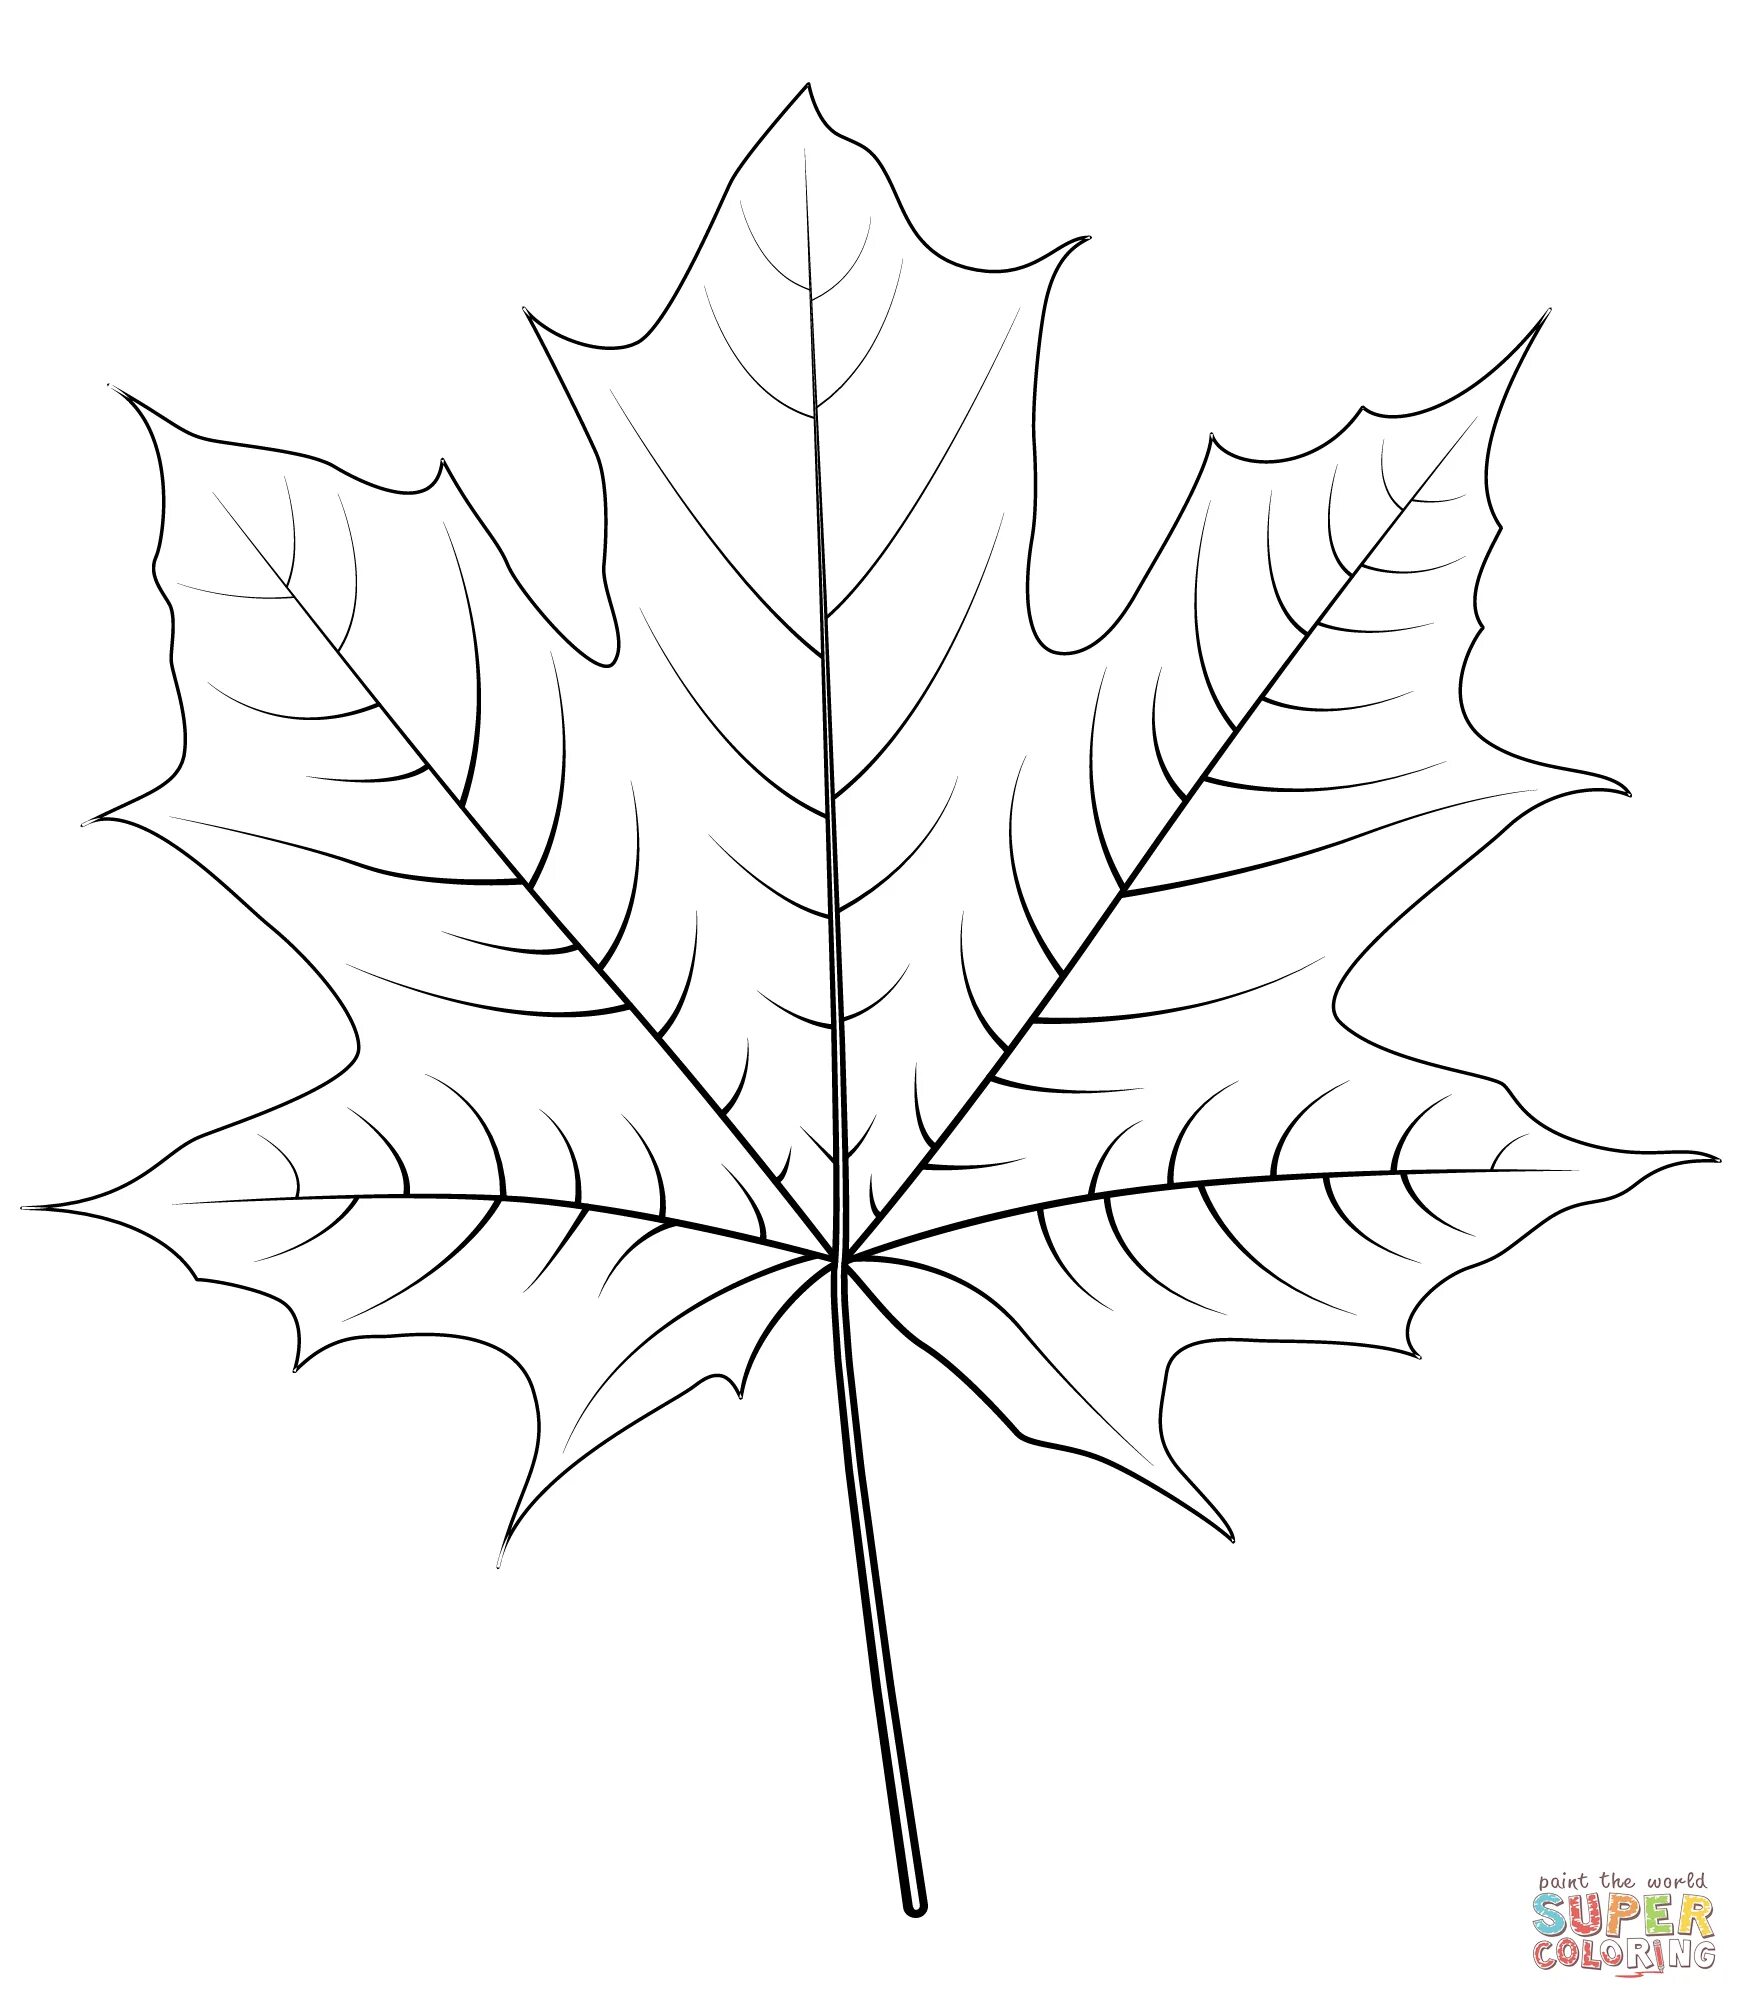 Maple leaf #21